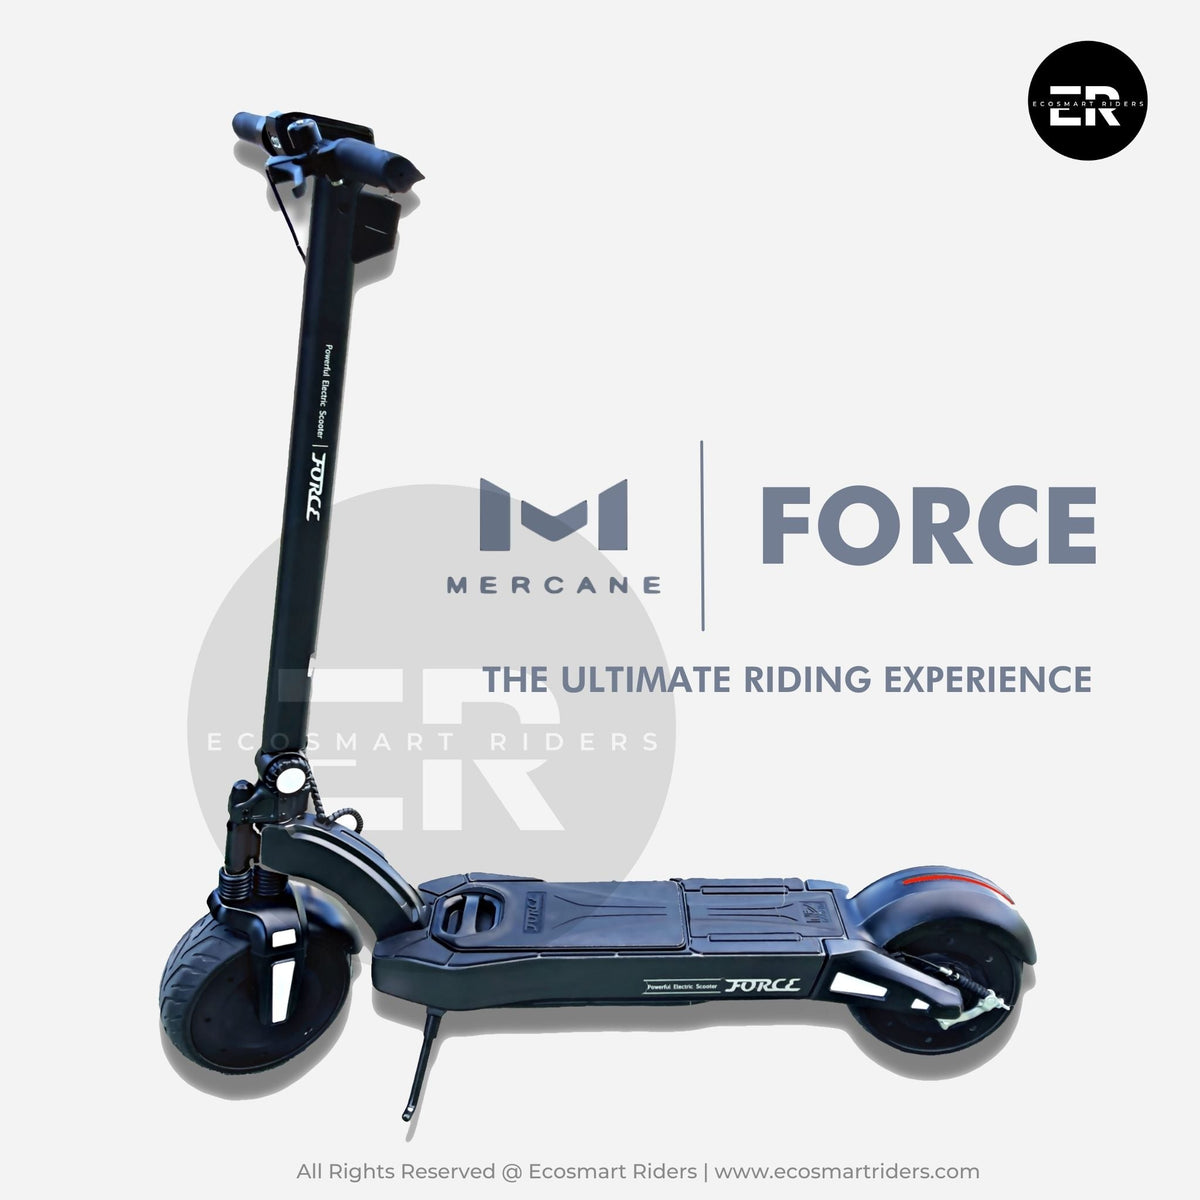 Mercane FORCE 2.0 | Ecosmart Riders